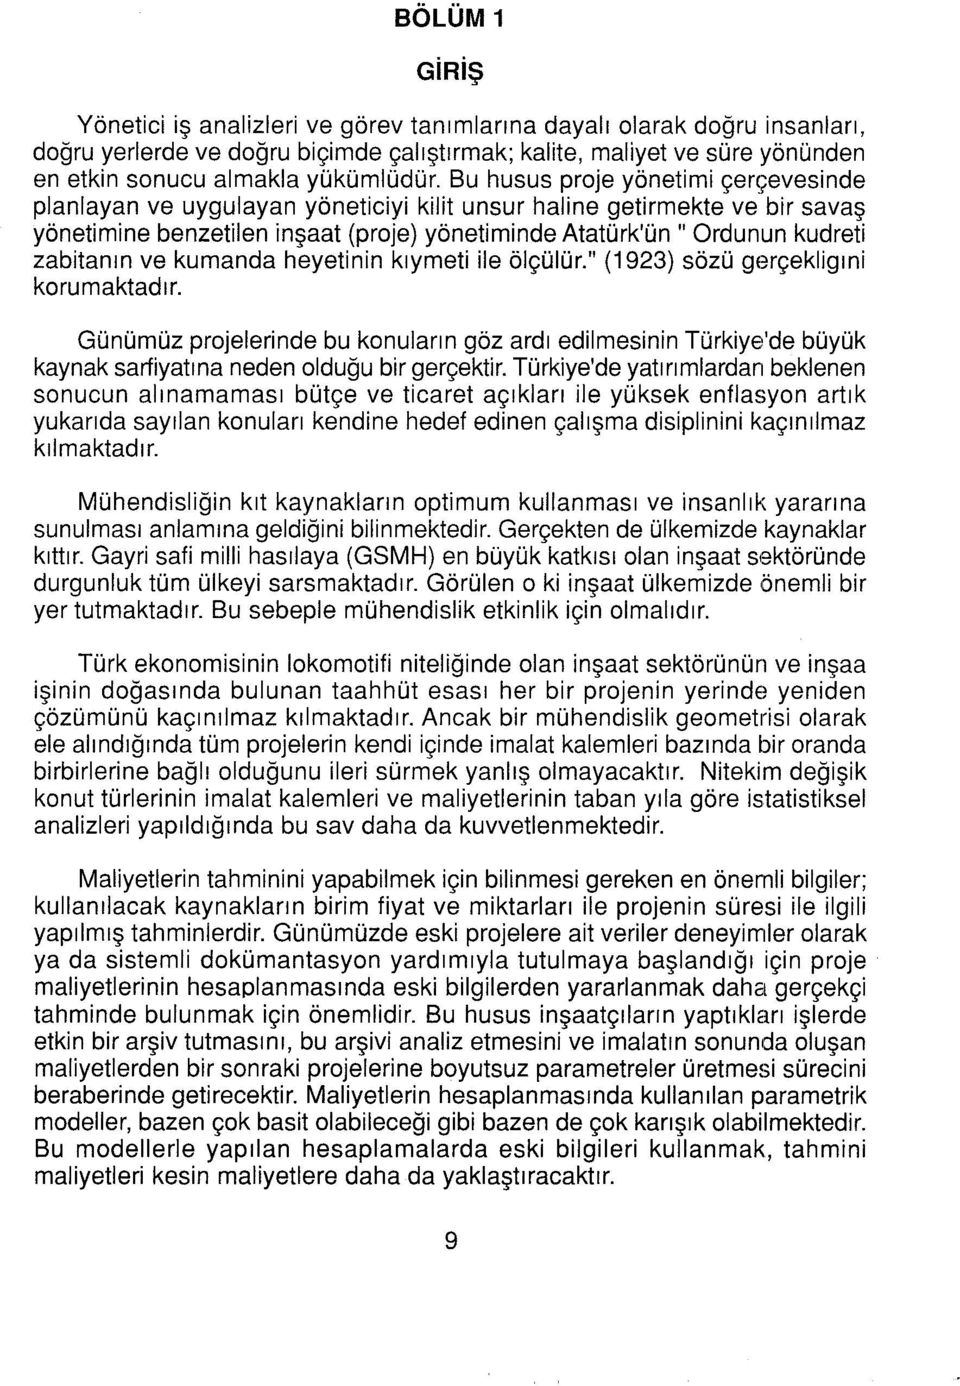 Bu husus proje yönetimi çerçevesinde planlayan ve uygulayan yöneticiyi kilit unsur haline getirmekte ve bir savaş yönetimine benzetilen inşaat (proje) yönetiminde Atatürk'ün "Ordunun kudreti